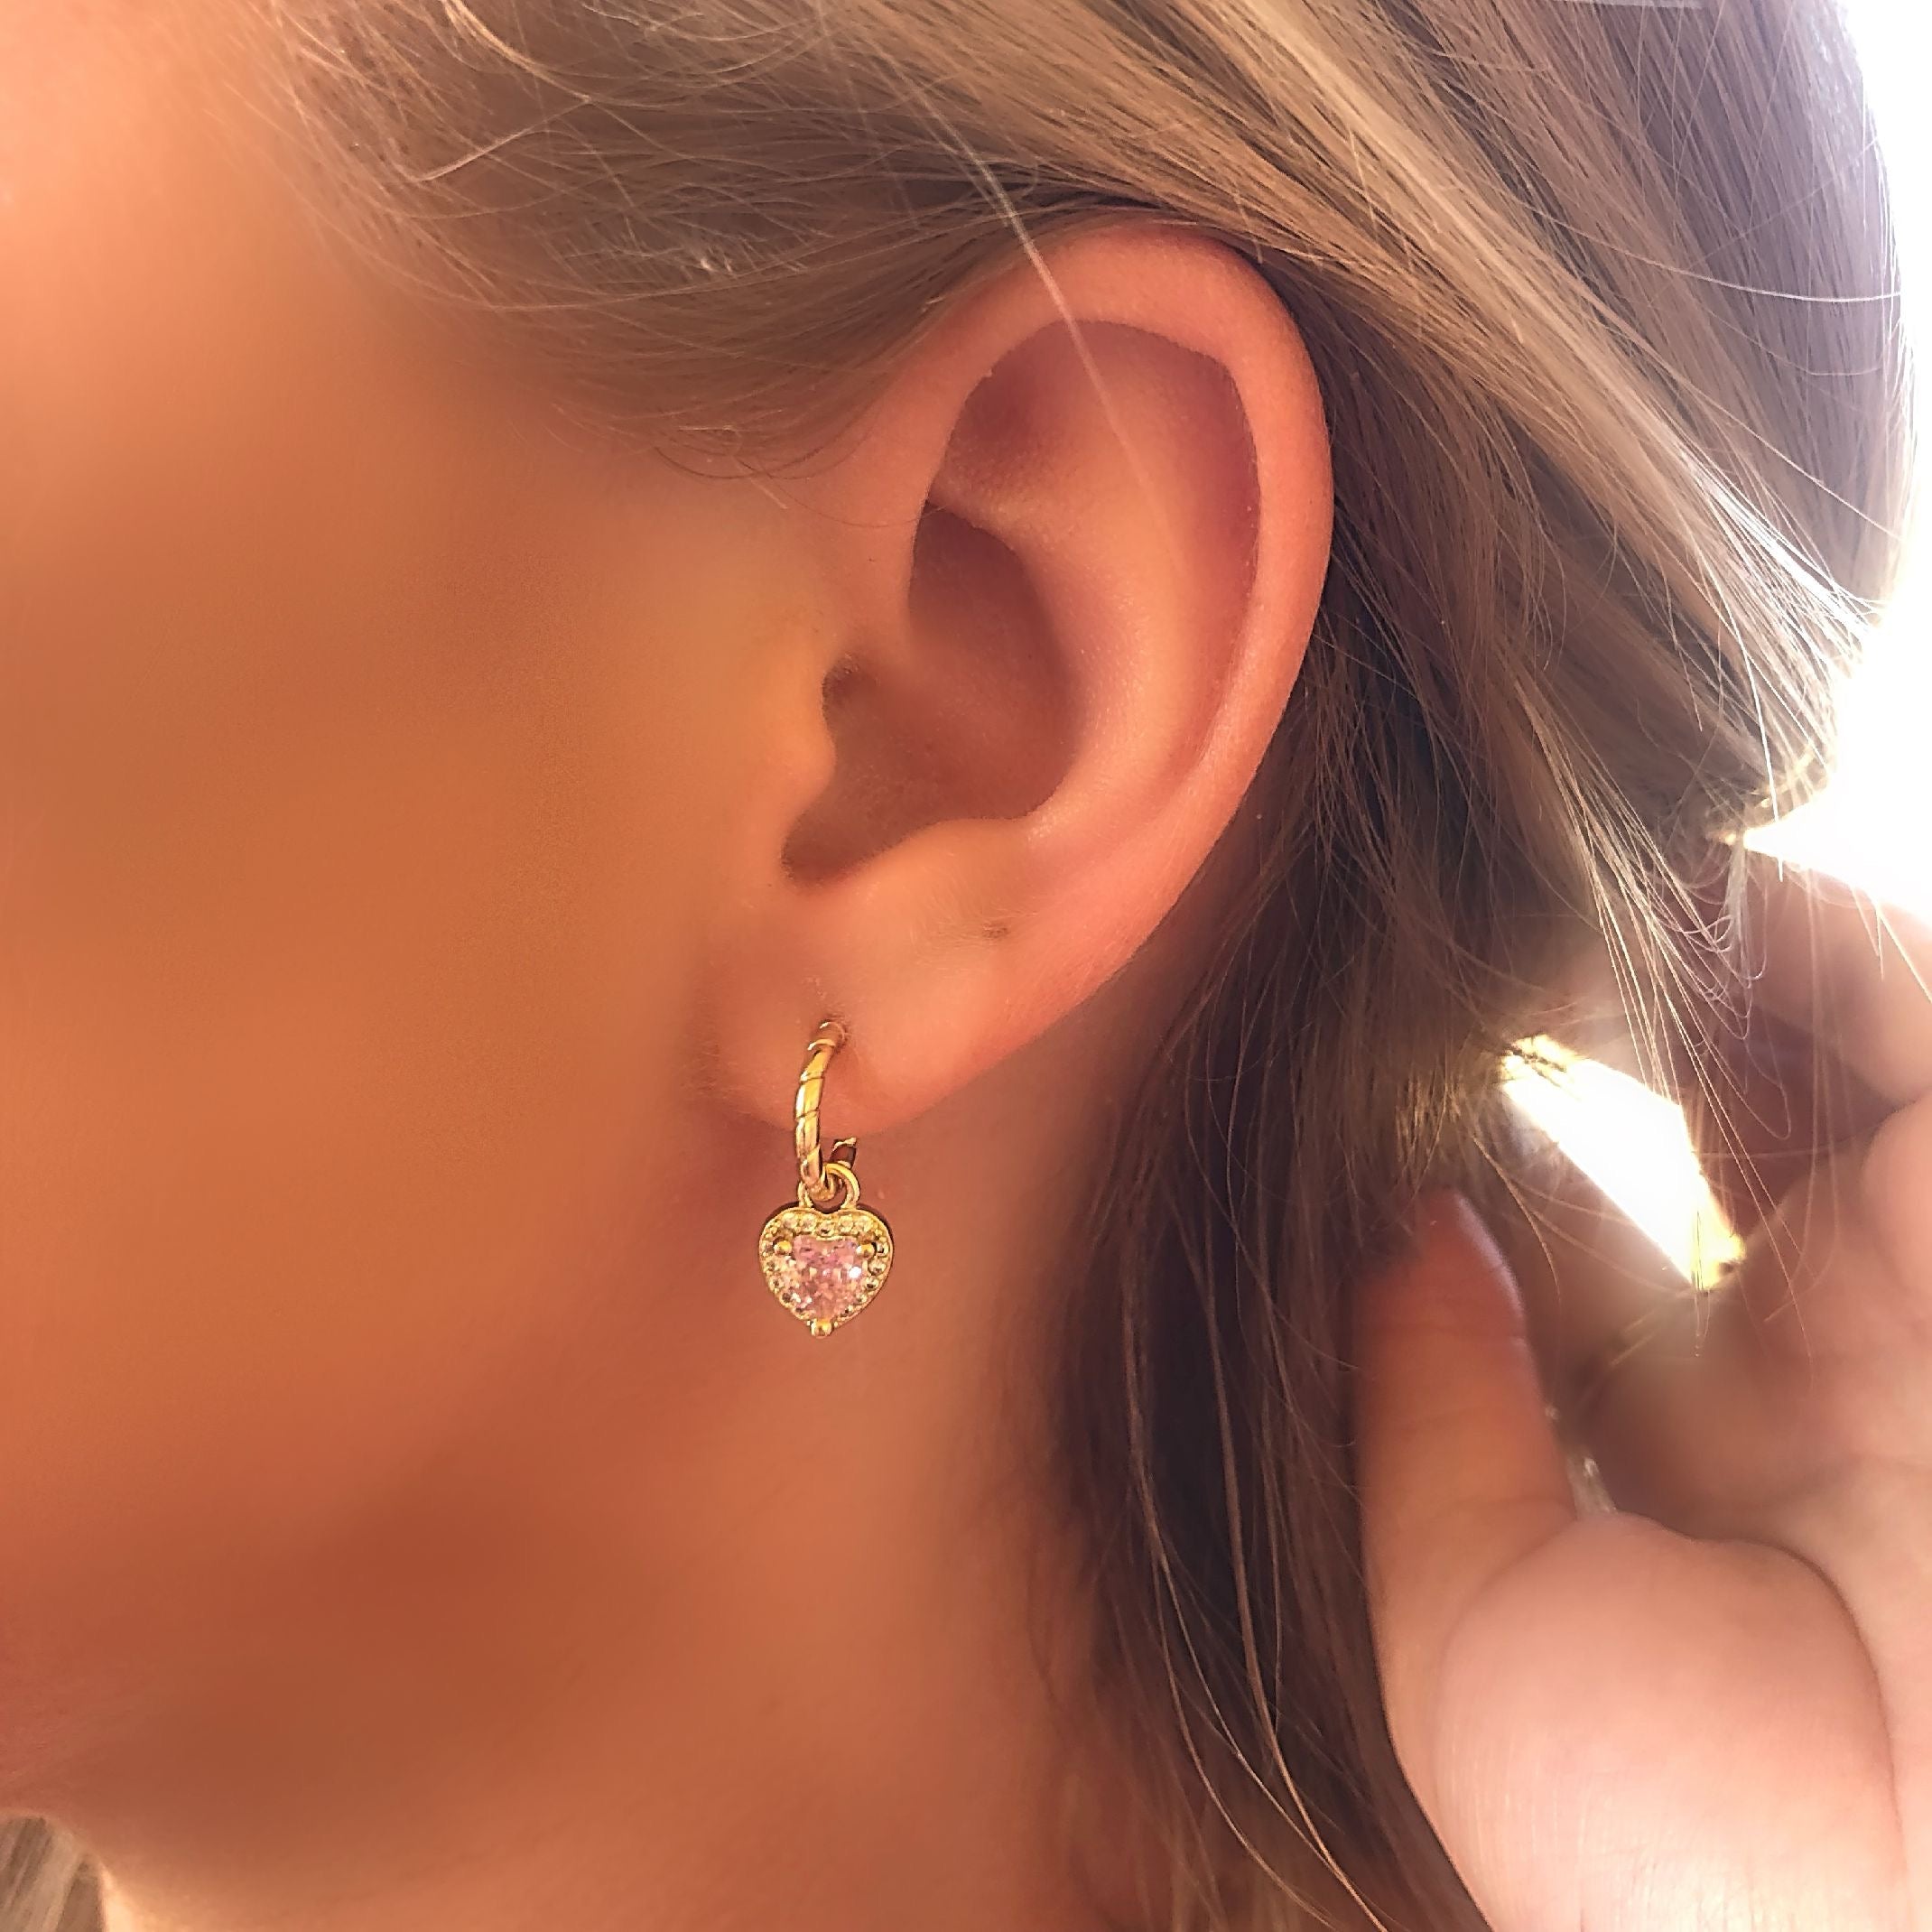 Pink heart earrings 